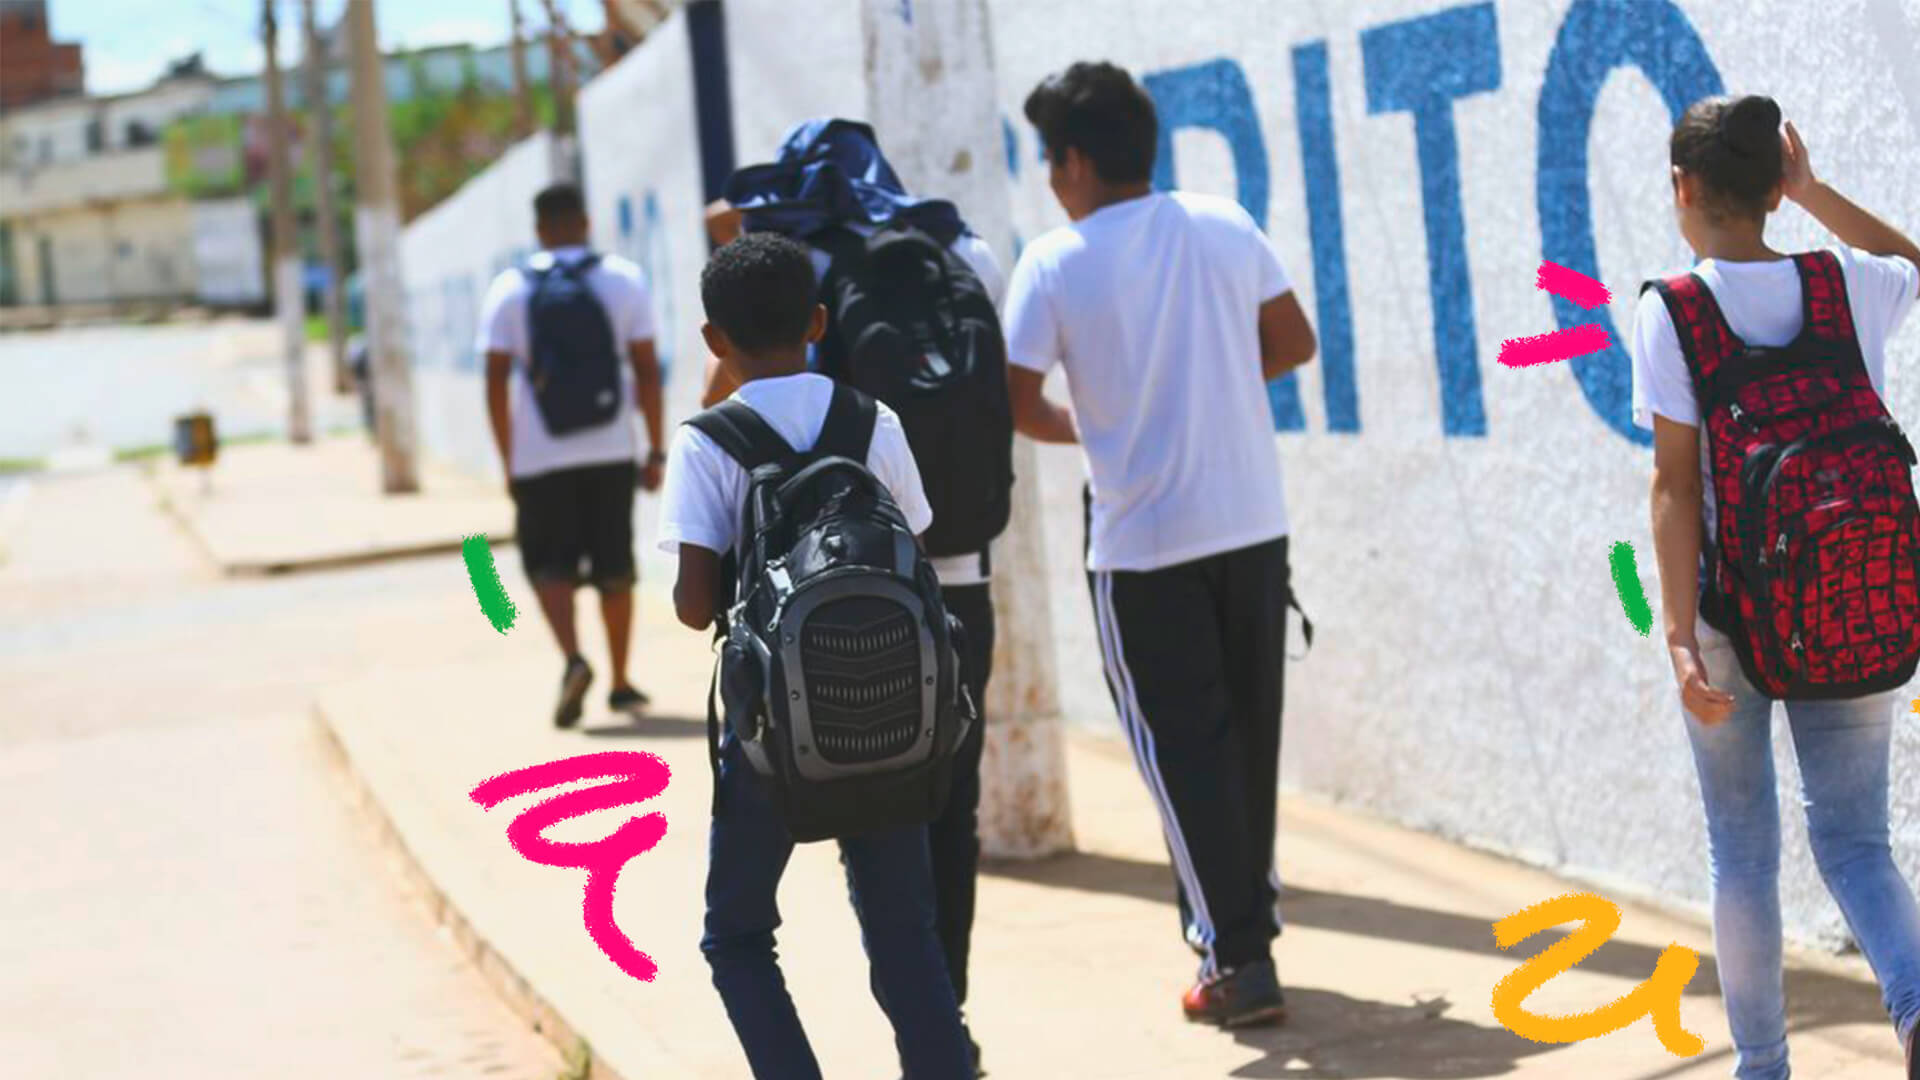 Um grupo de quatro jovens caminham por uma calçada, em paralelo a um muro. Eles usam uniforme escolar e três deles carregam mochilas nas costas